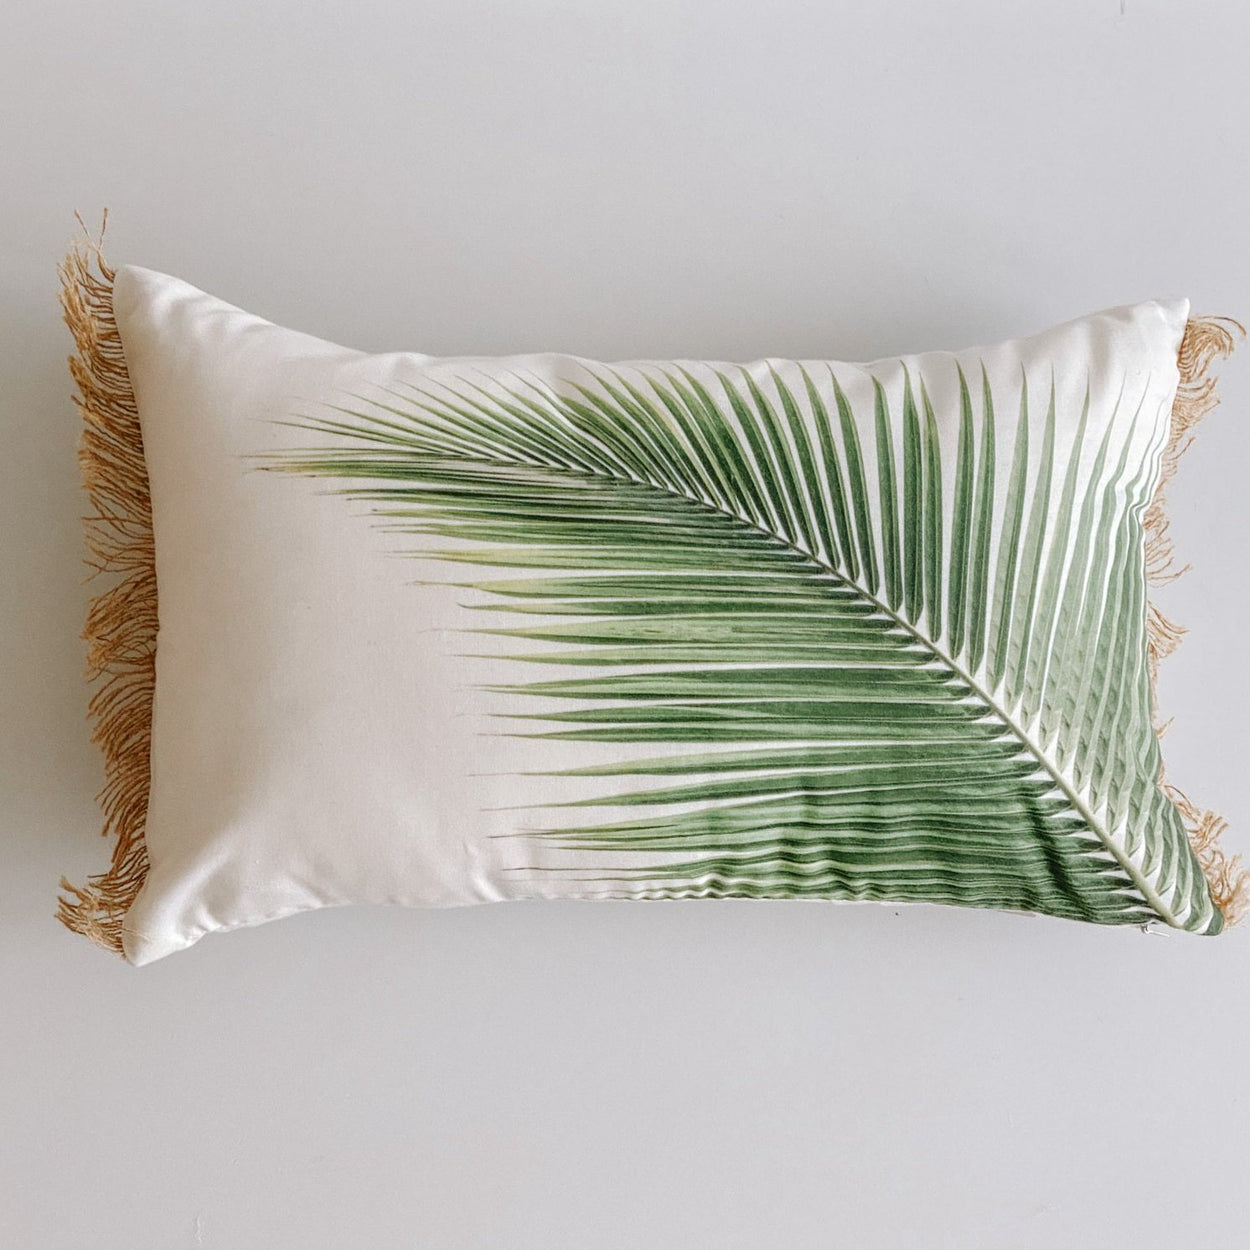 The Queen Palm Cushion